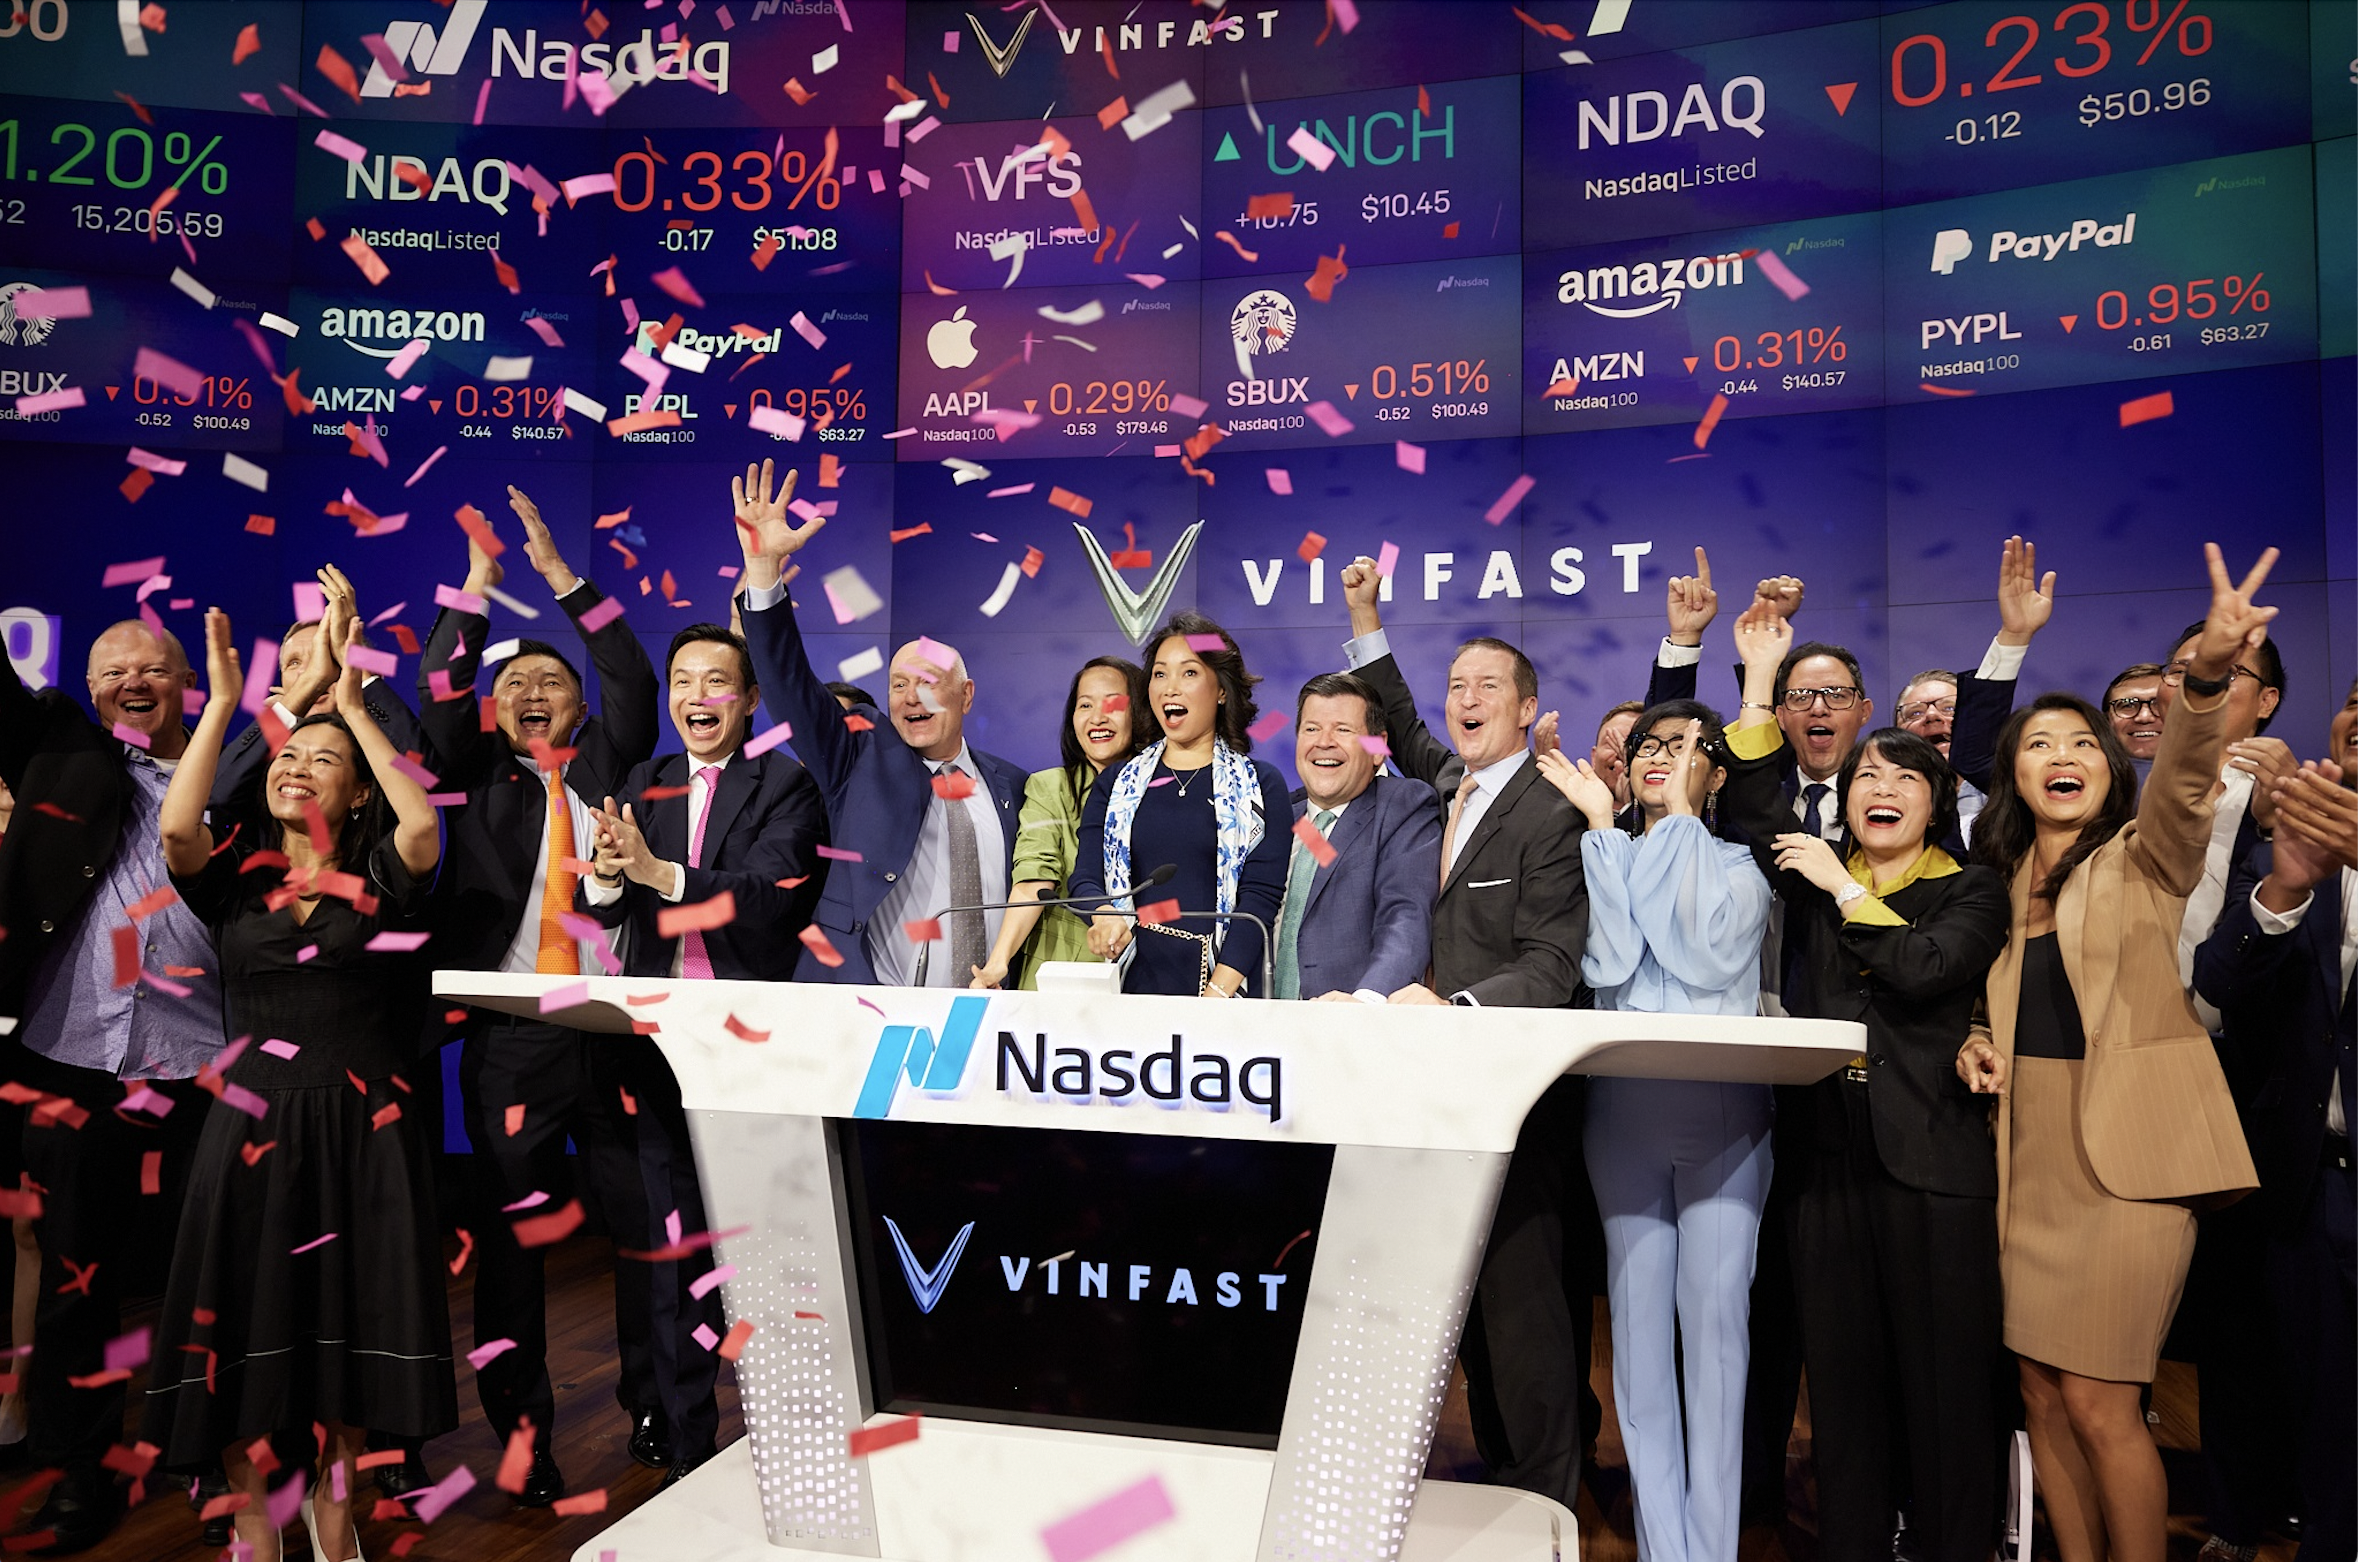 VinFast chính thức trở thành công ty niêm yết đại chúng có tầm vóc toàn cầu và là thương hiệu Việt có giá trị vốn hoá lớn nhất niêm yết trên sàn chứng khoán Mỹ tính đến hiện tại. Ảnh: VinFast 